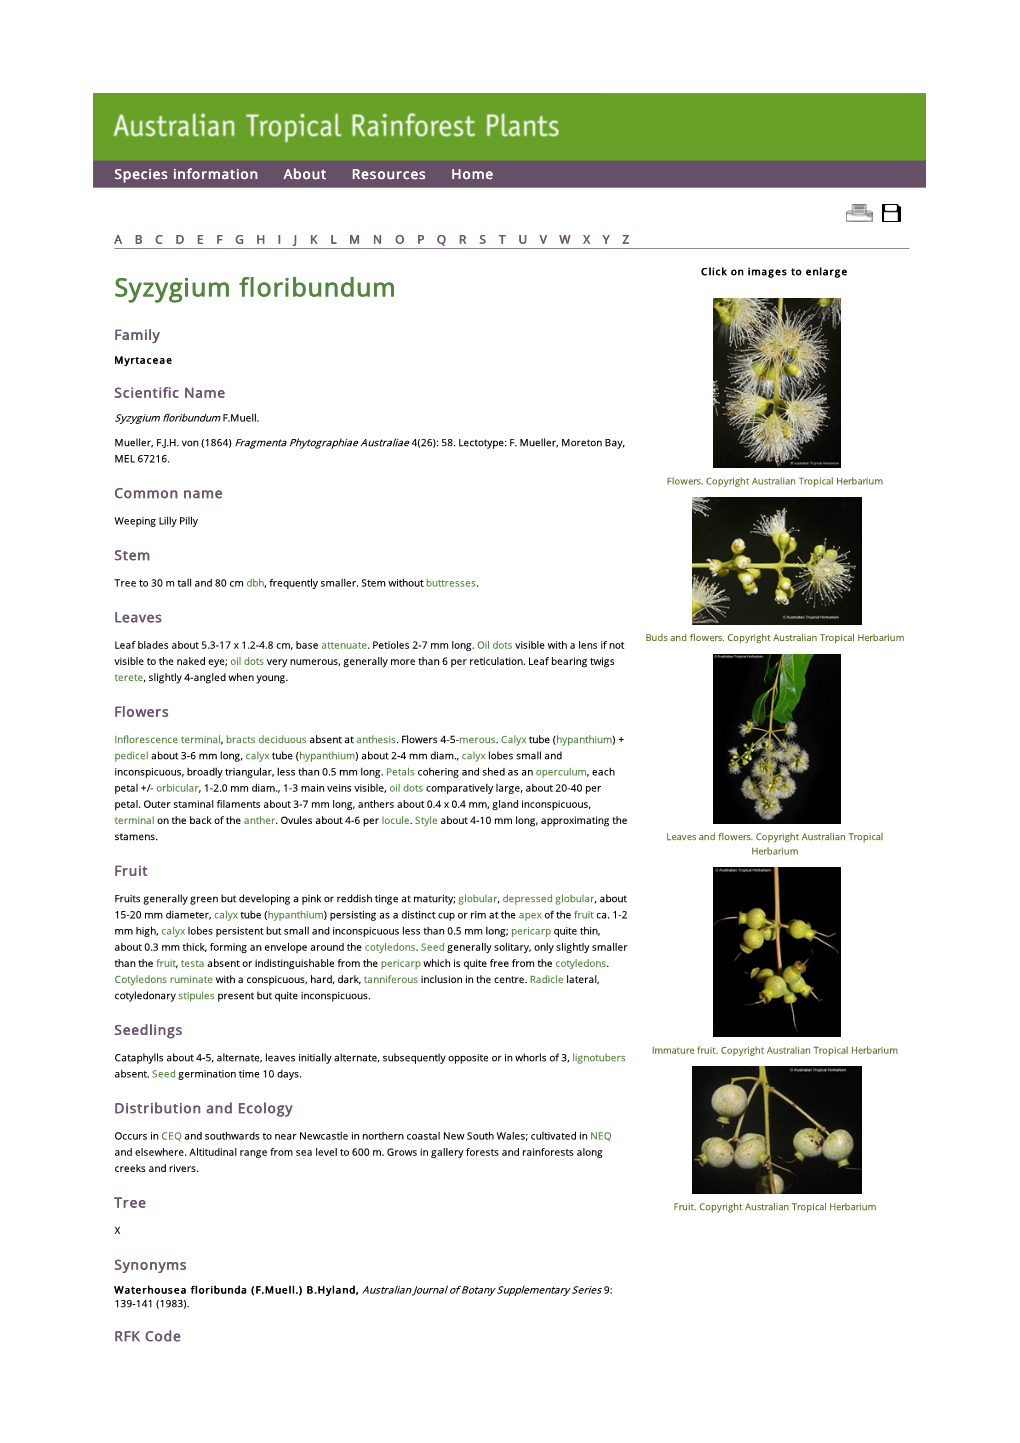 Syzygium Floribundum Click on Images to Enlarge